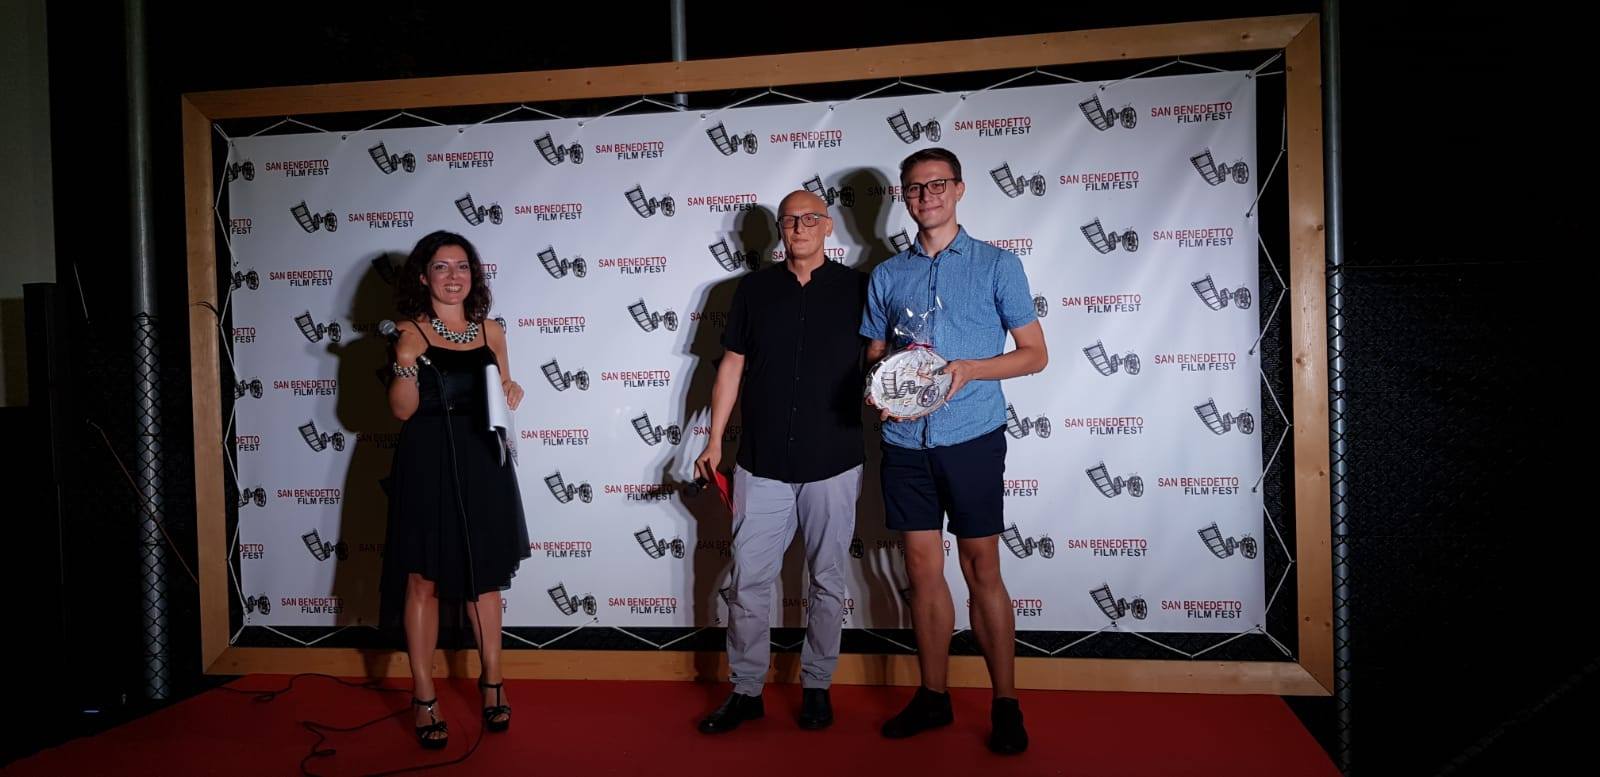 Grande successo per la 2a edizione del San Benedetto Film Fest